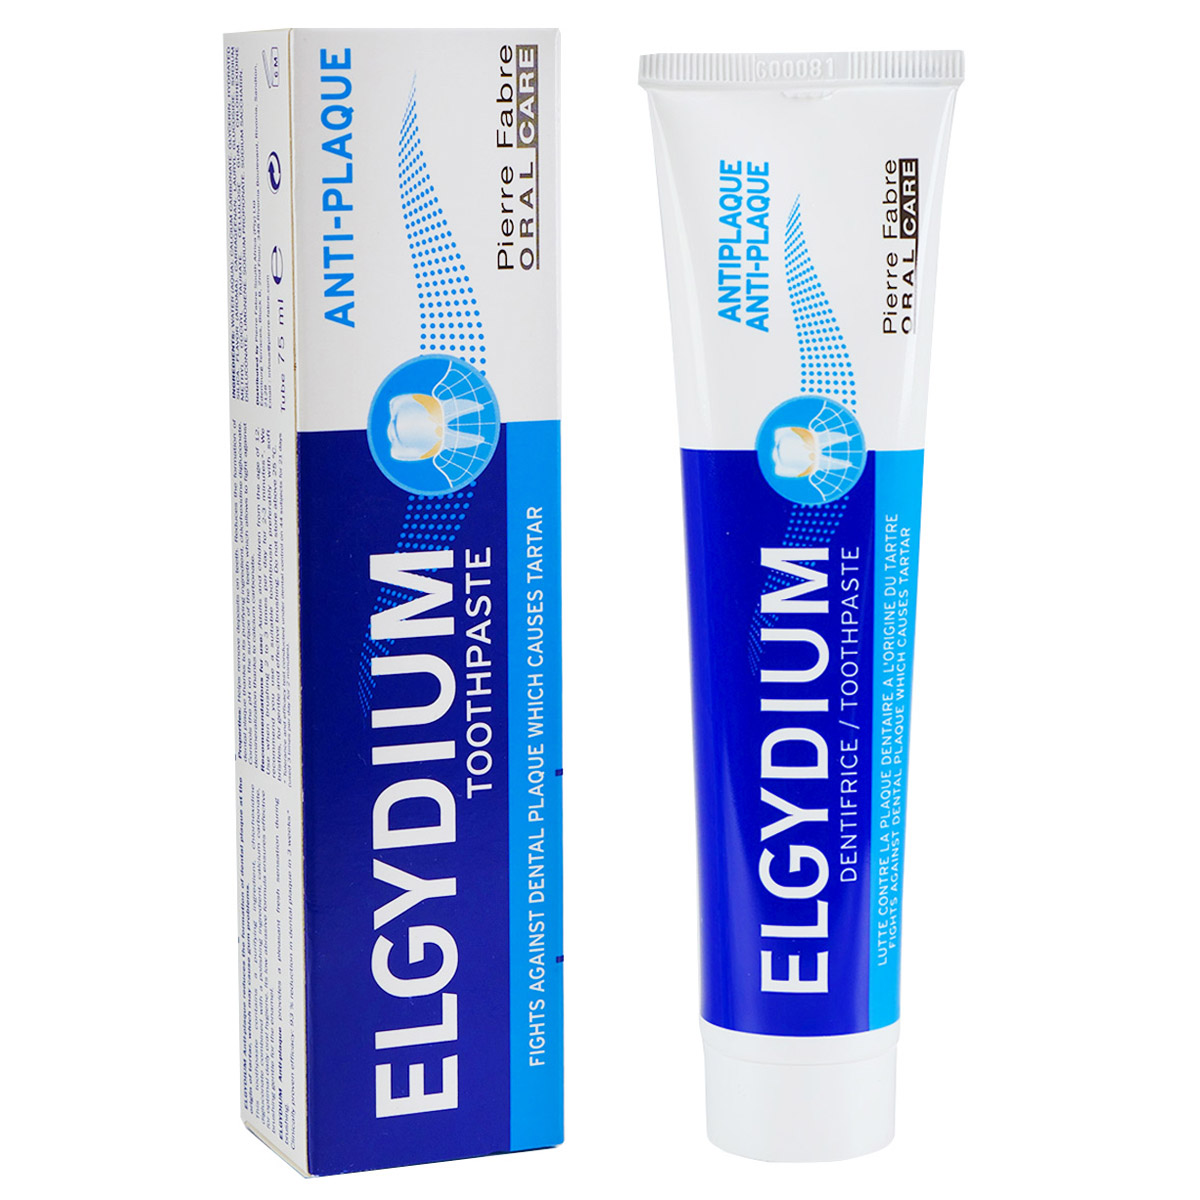 Зубная паста Эльгидиум бизорюк органическая зубная паста против воспалений десен с маклюрой 50